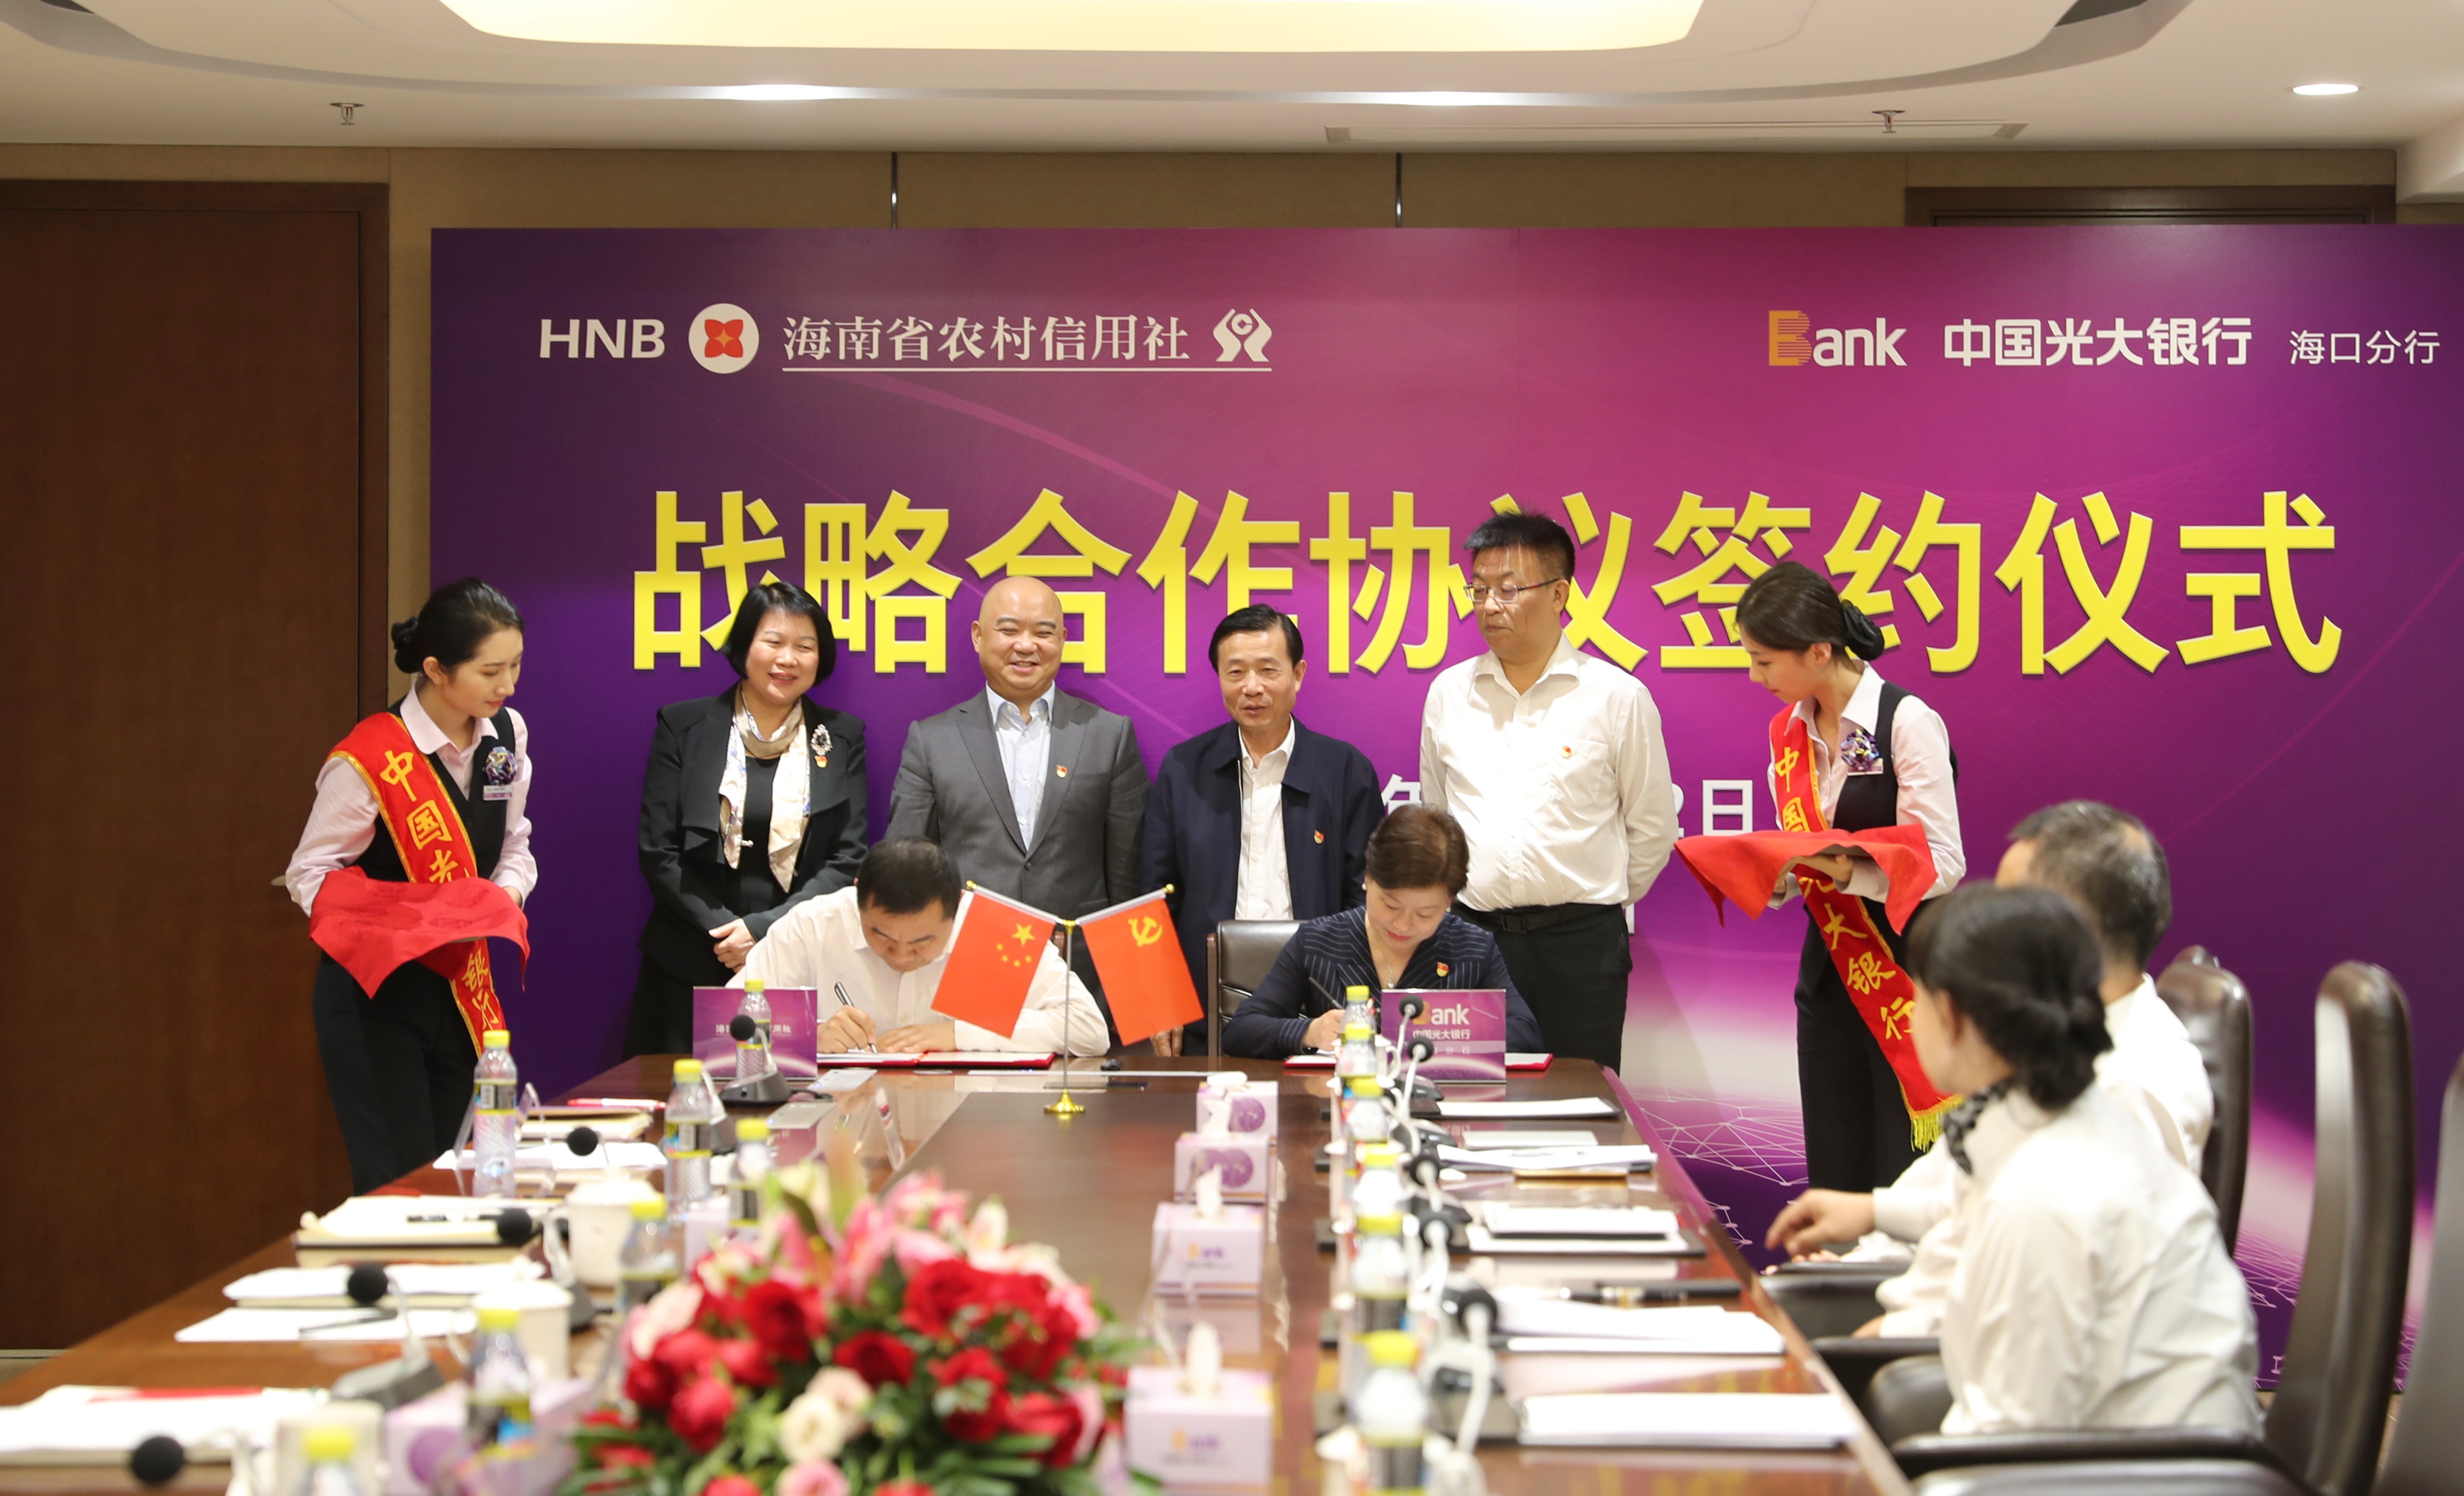 海南省农信社与光大银行海口分行签署战略合作协议